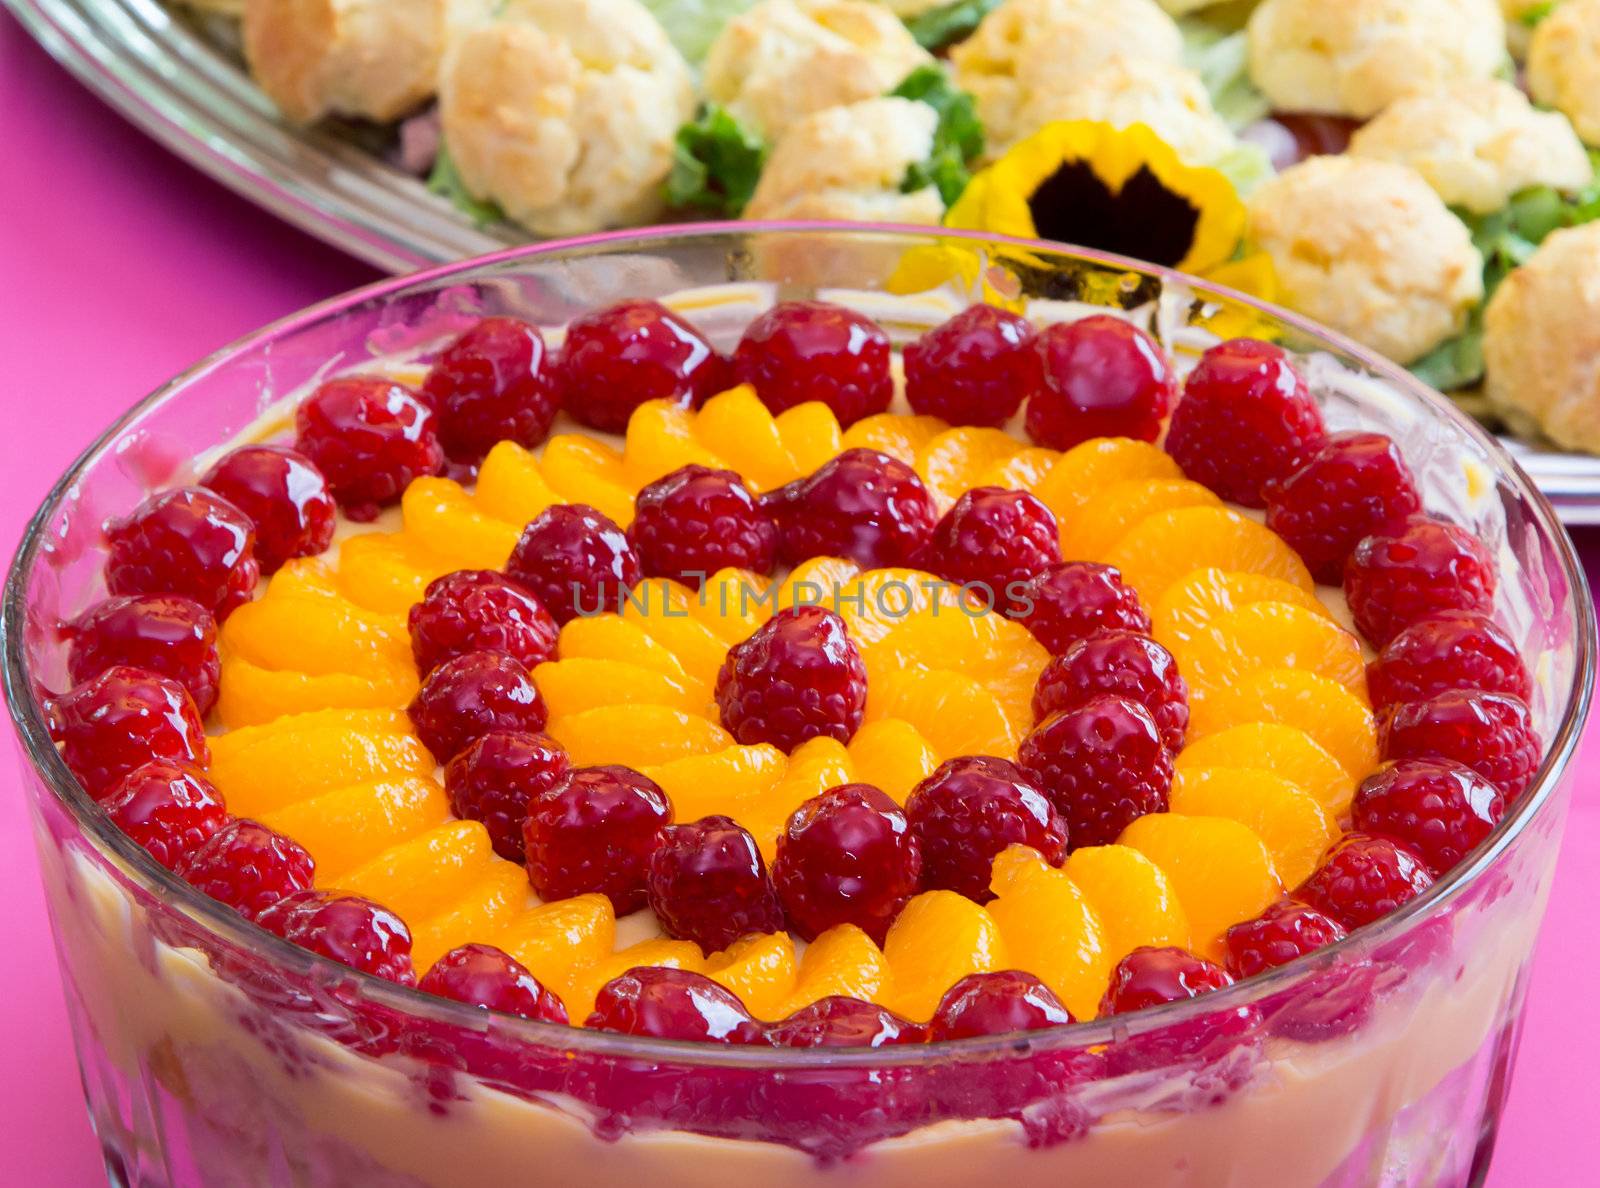 Raspberry and Orange Dessert by wolterk